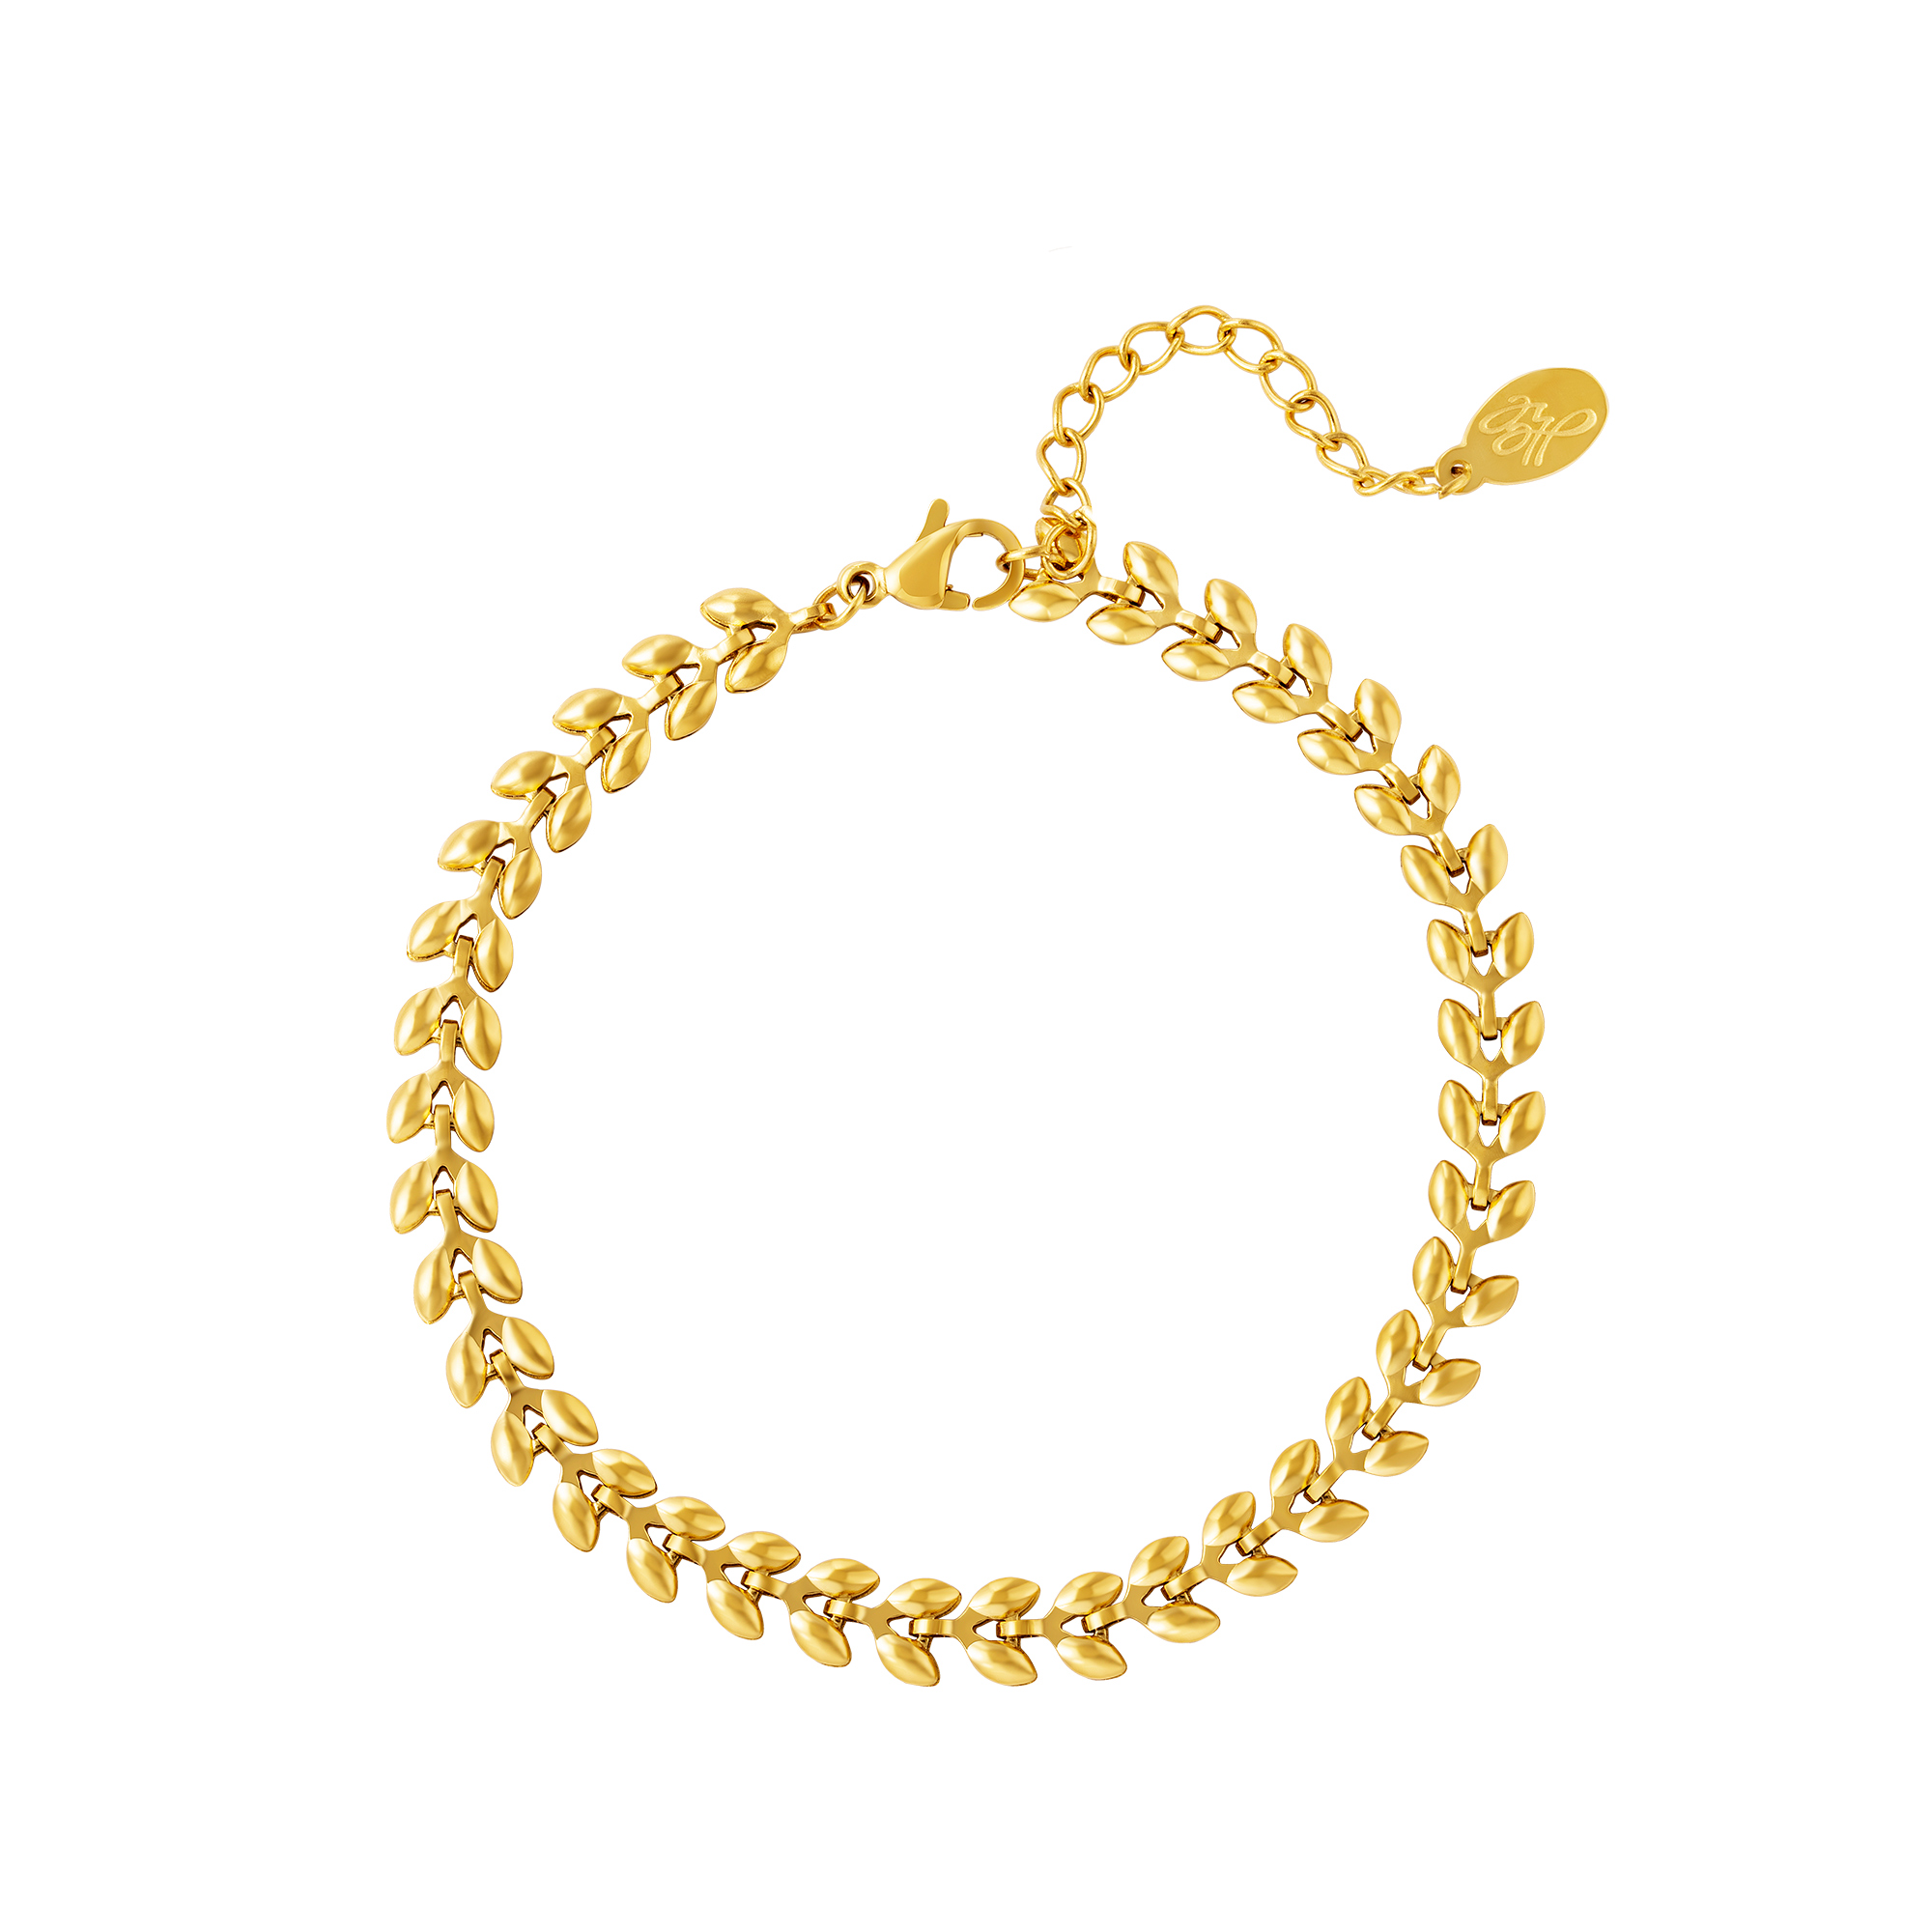 Armband Blaadjes goud gouden korte dames armbanden bracelets met blaadjes patroon rvs roest vrij staal yehwang sieraden accessoires kopen bestellen